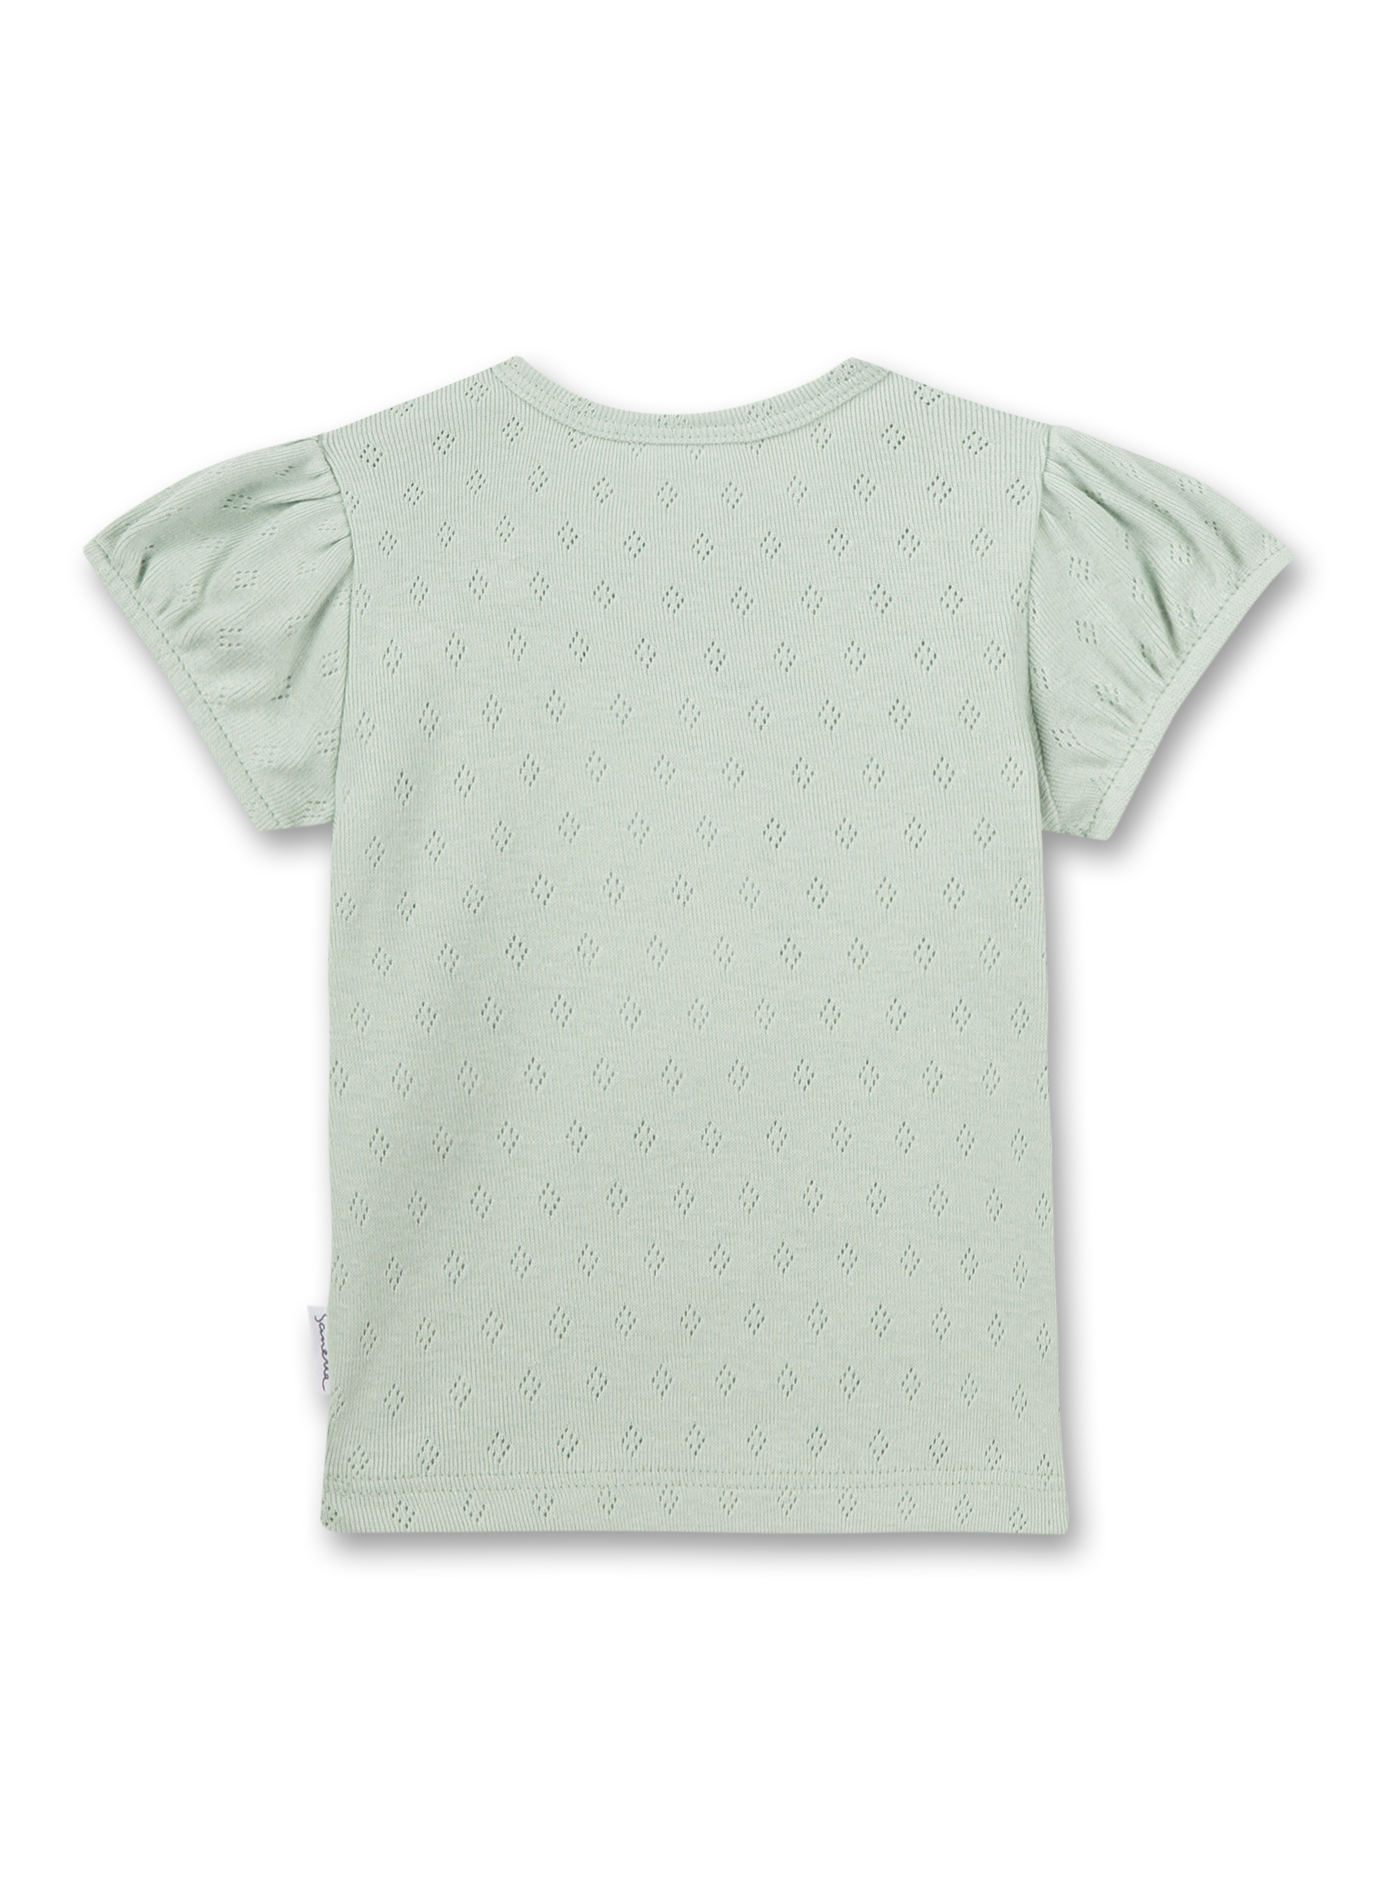 Mädchen T-Shirt Grün